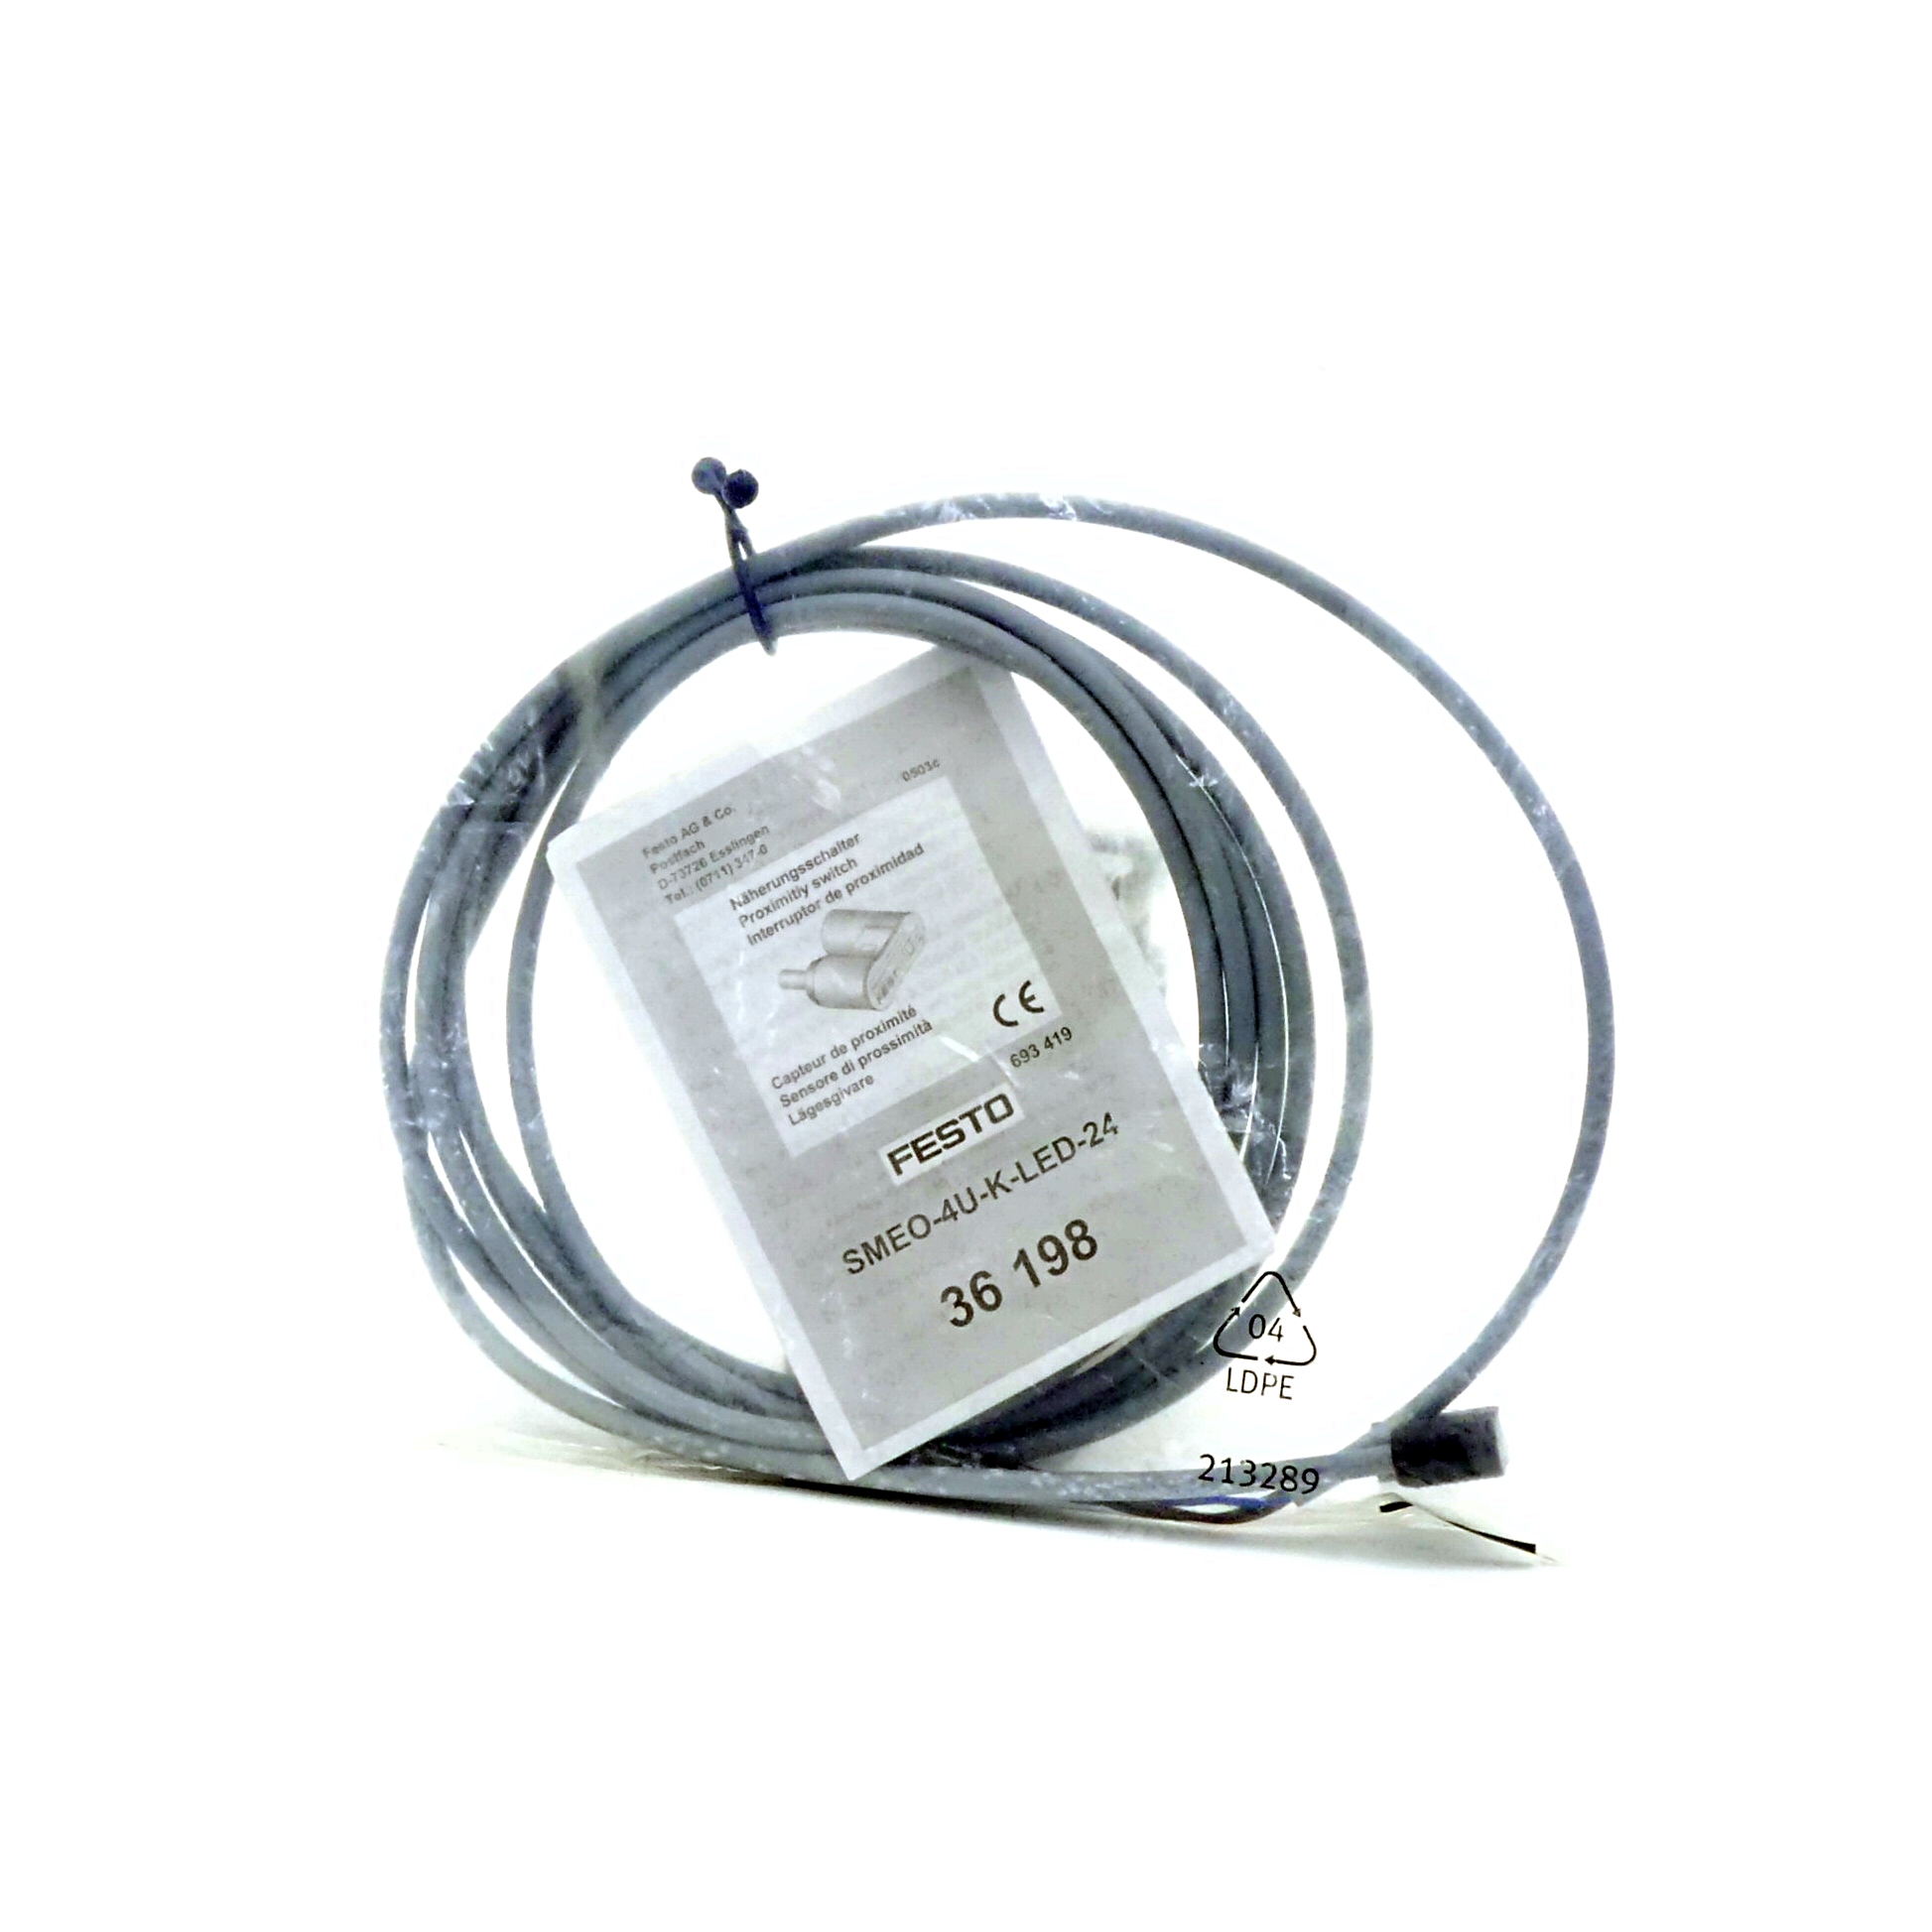 Proximity Switch SMEO-40-K-LED-24 